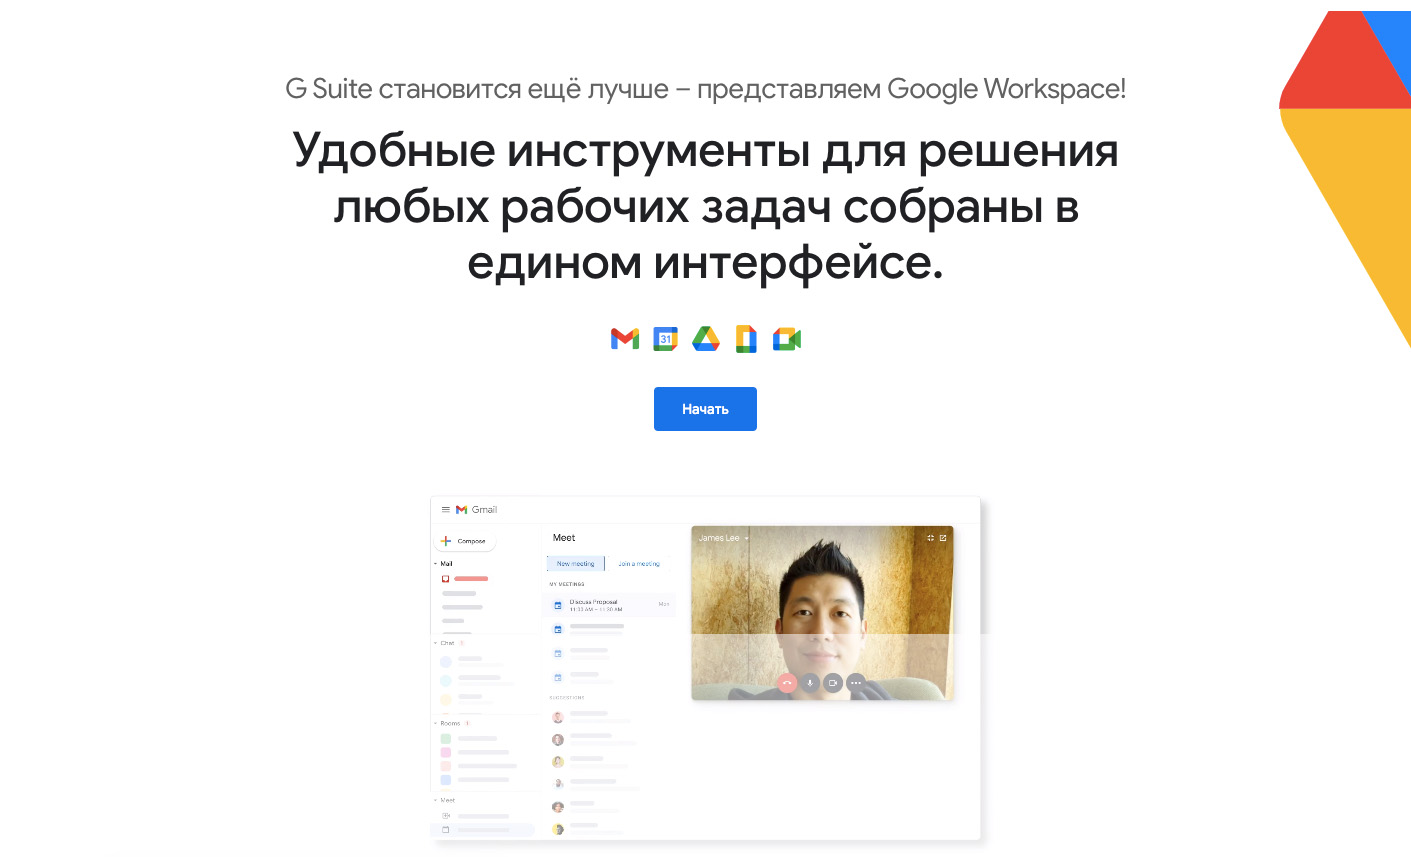 Корпоративный Google Workspace (G Suite) - удобное пространство для совместной работы